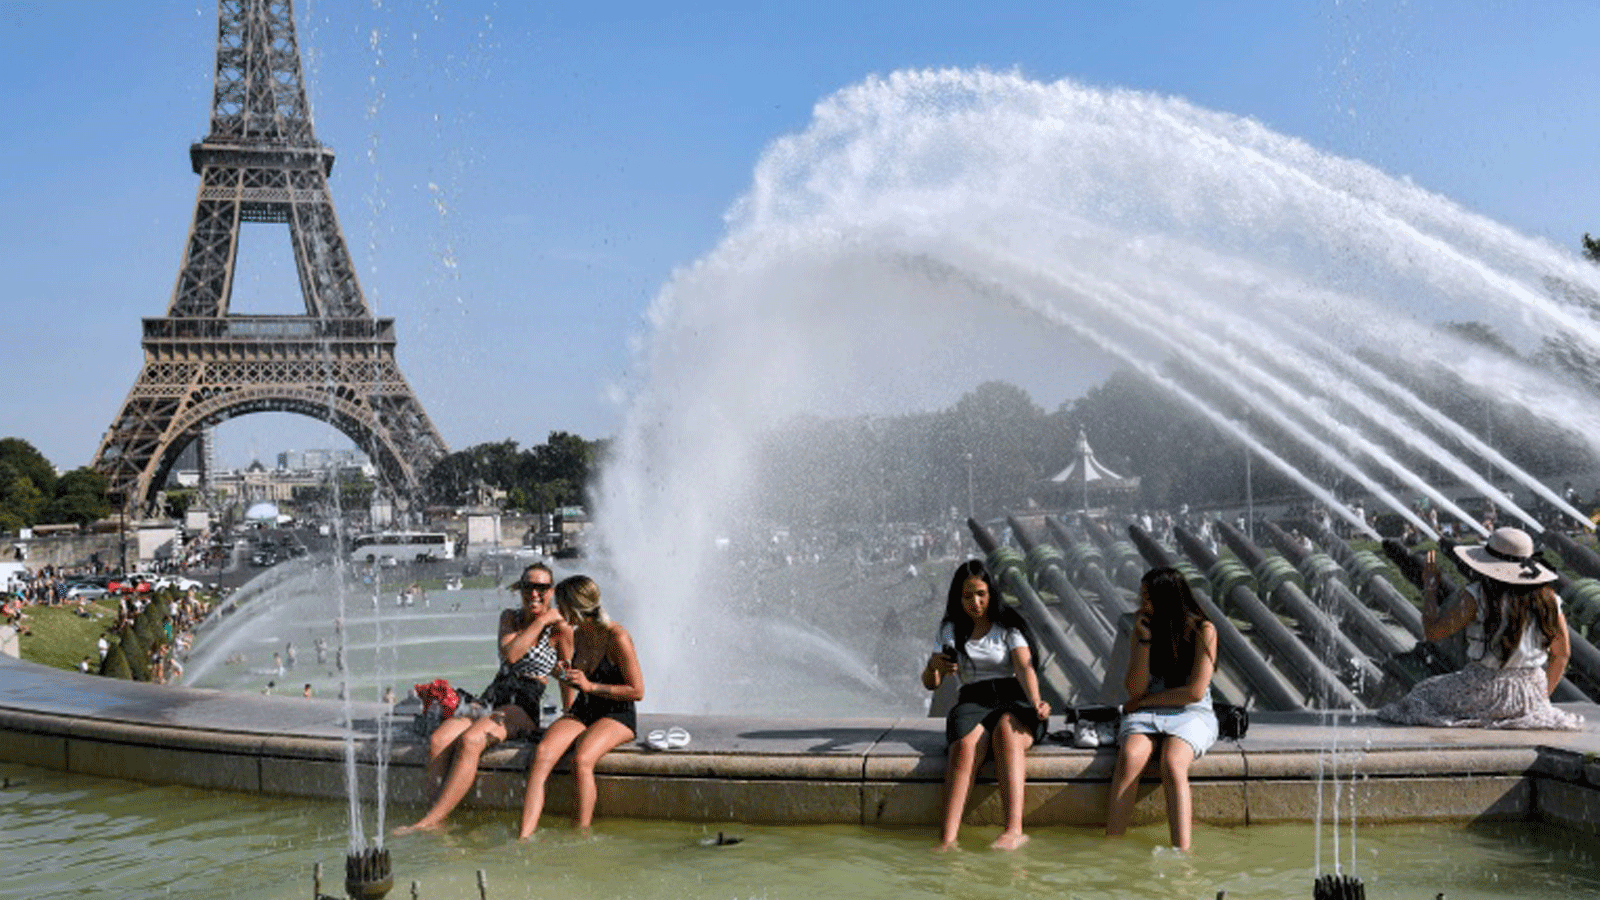 خلال موجة حرّ في ساحة تروكاديرو في باريس في 23 تموز/يوليو 2019